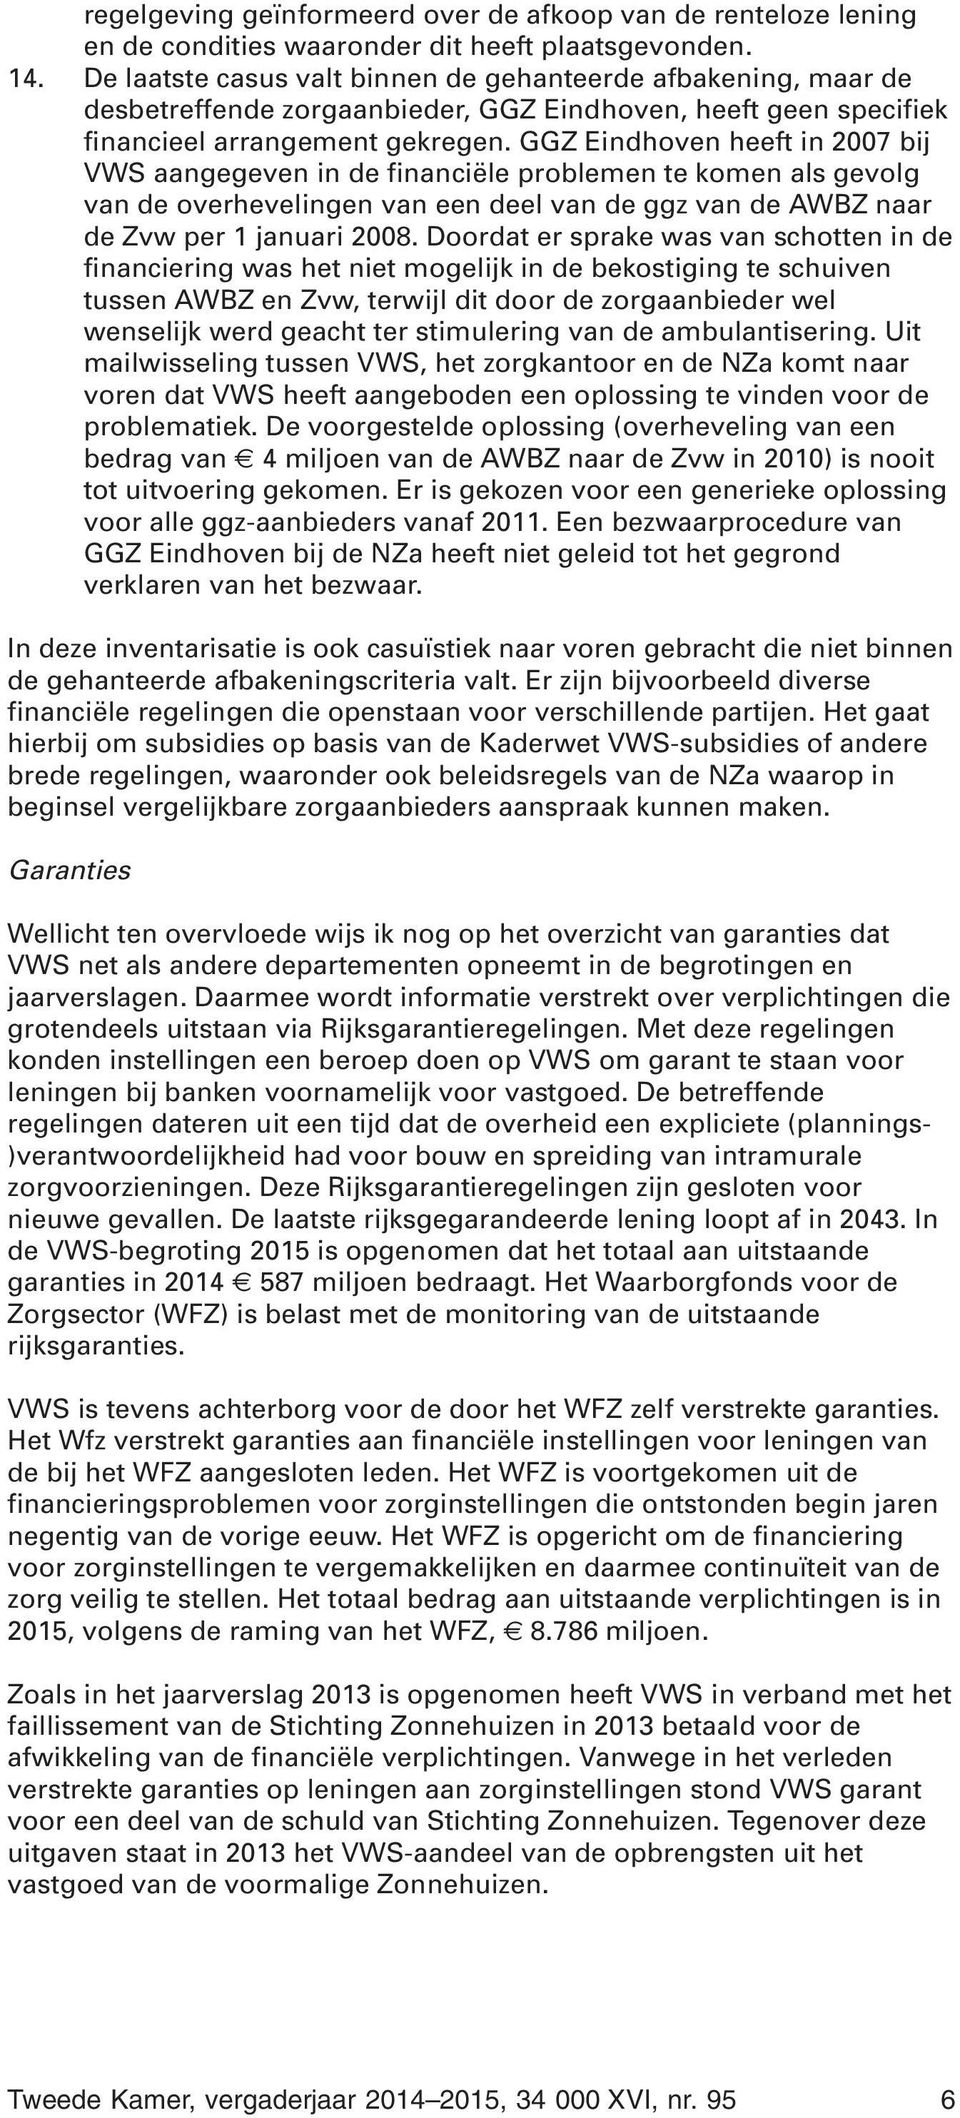 GGZ Eindhoven heeft in 2007 bij VWS aangegeven in de financiële problemen te komen als gevolg van de overhevelingen van een deel van de ggz van de AWBZ naar de Zvw per 1 januari 2008.